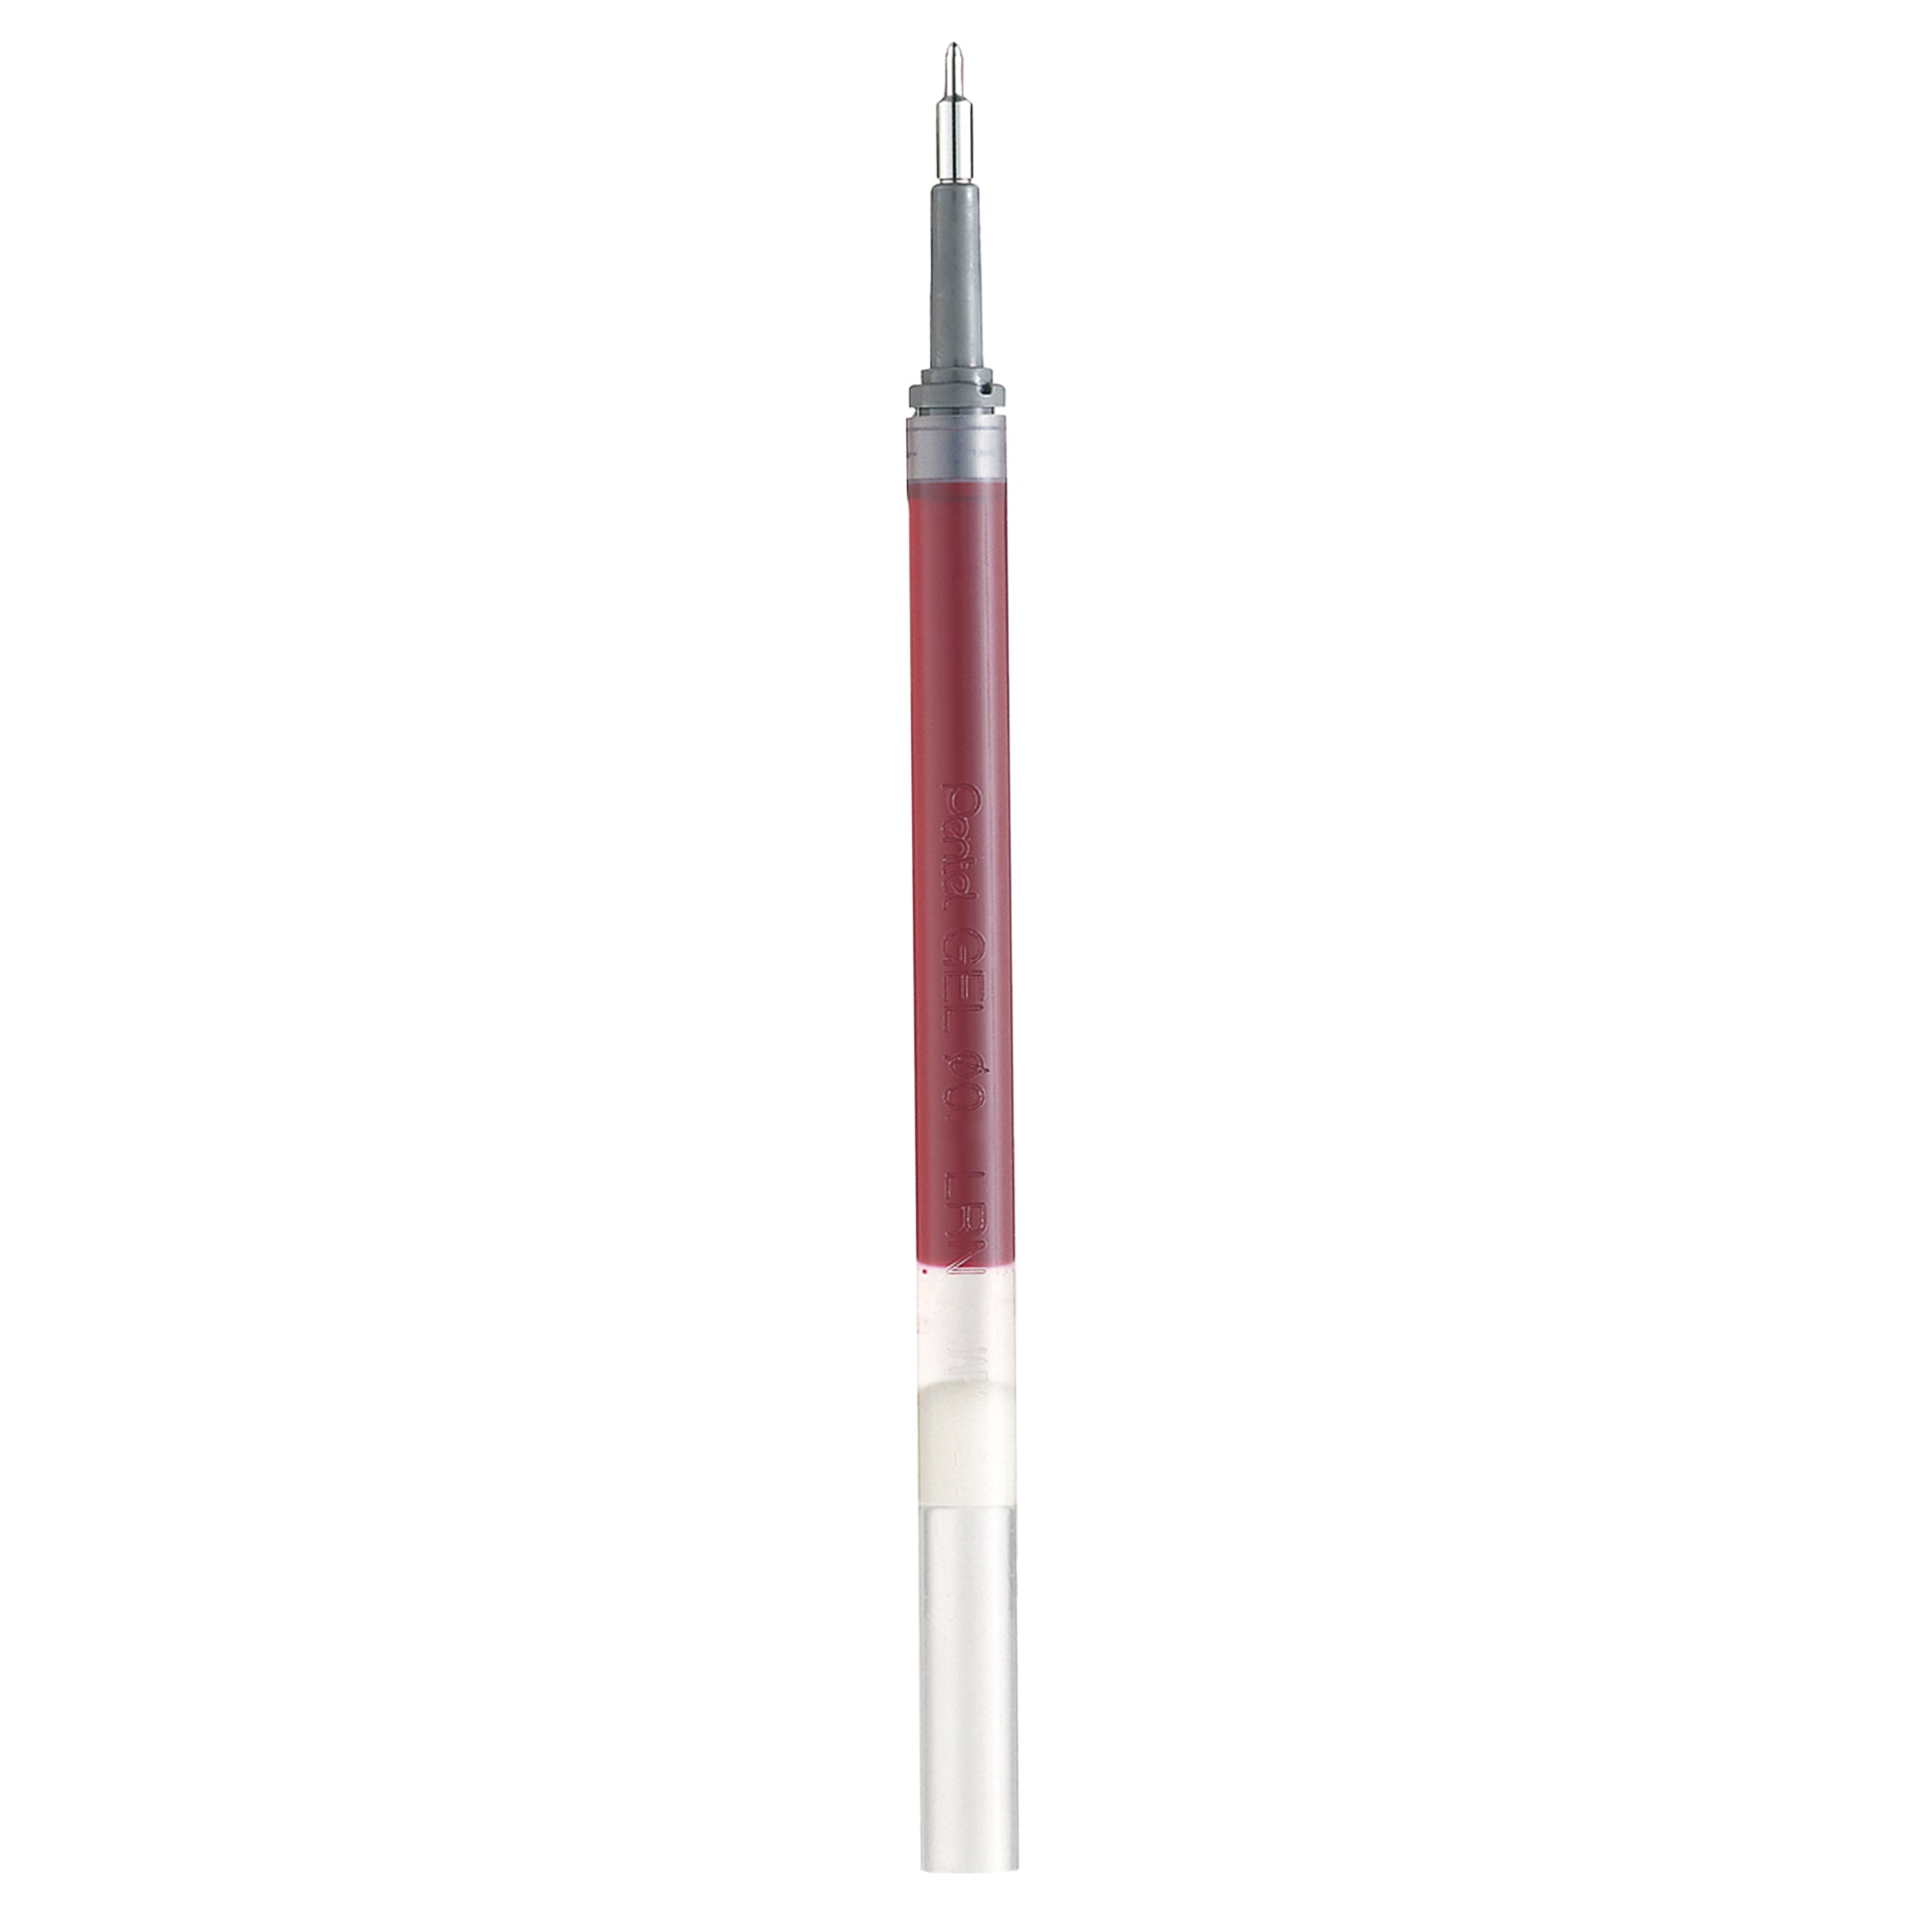 pentel-refill-energel-x-lrn4-bx-rosso-0-4mm